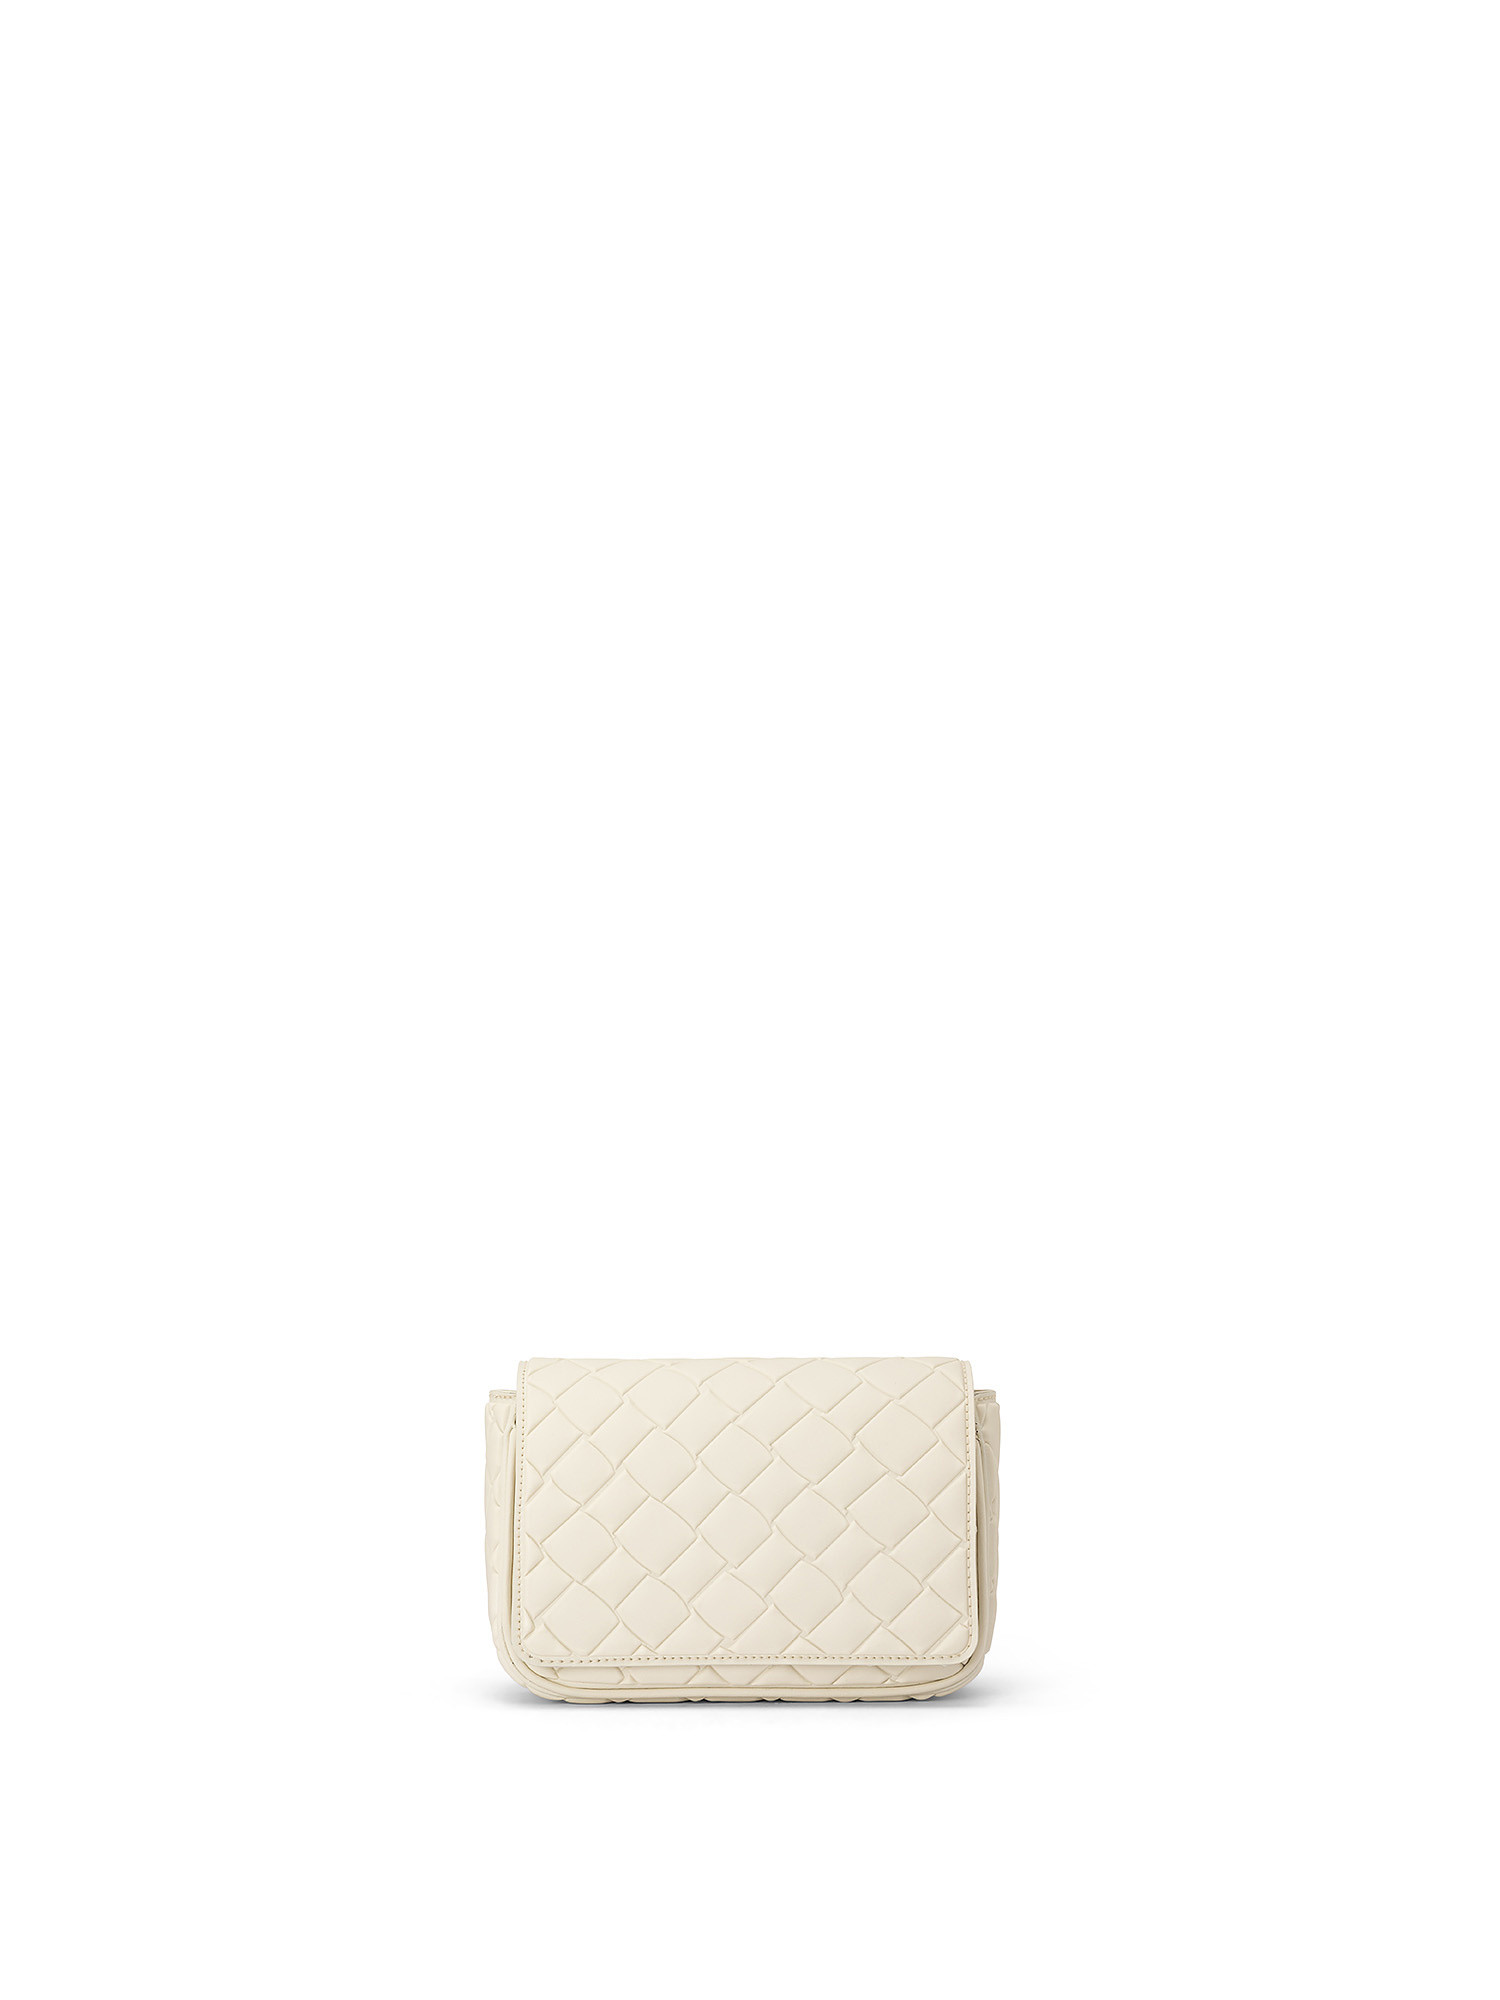 Small shoulder bag, White, large image number 0